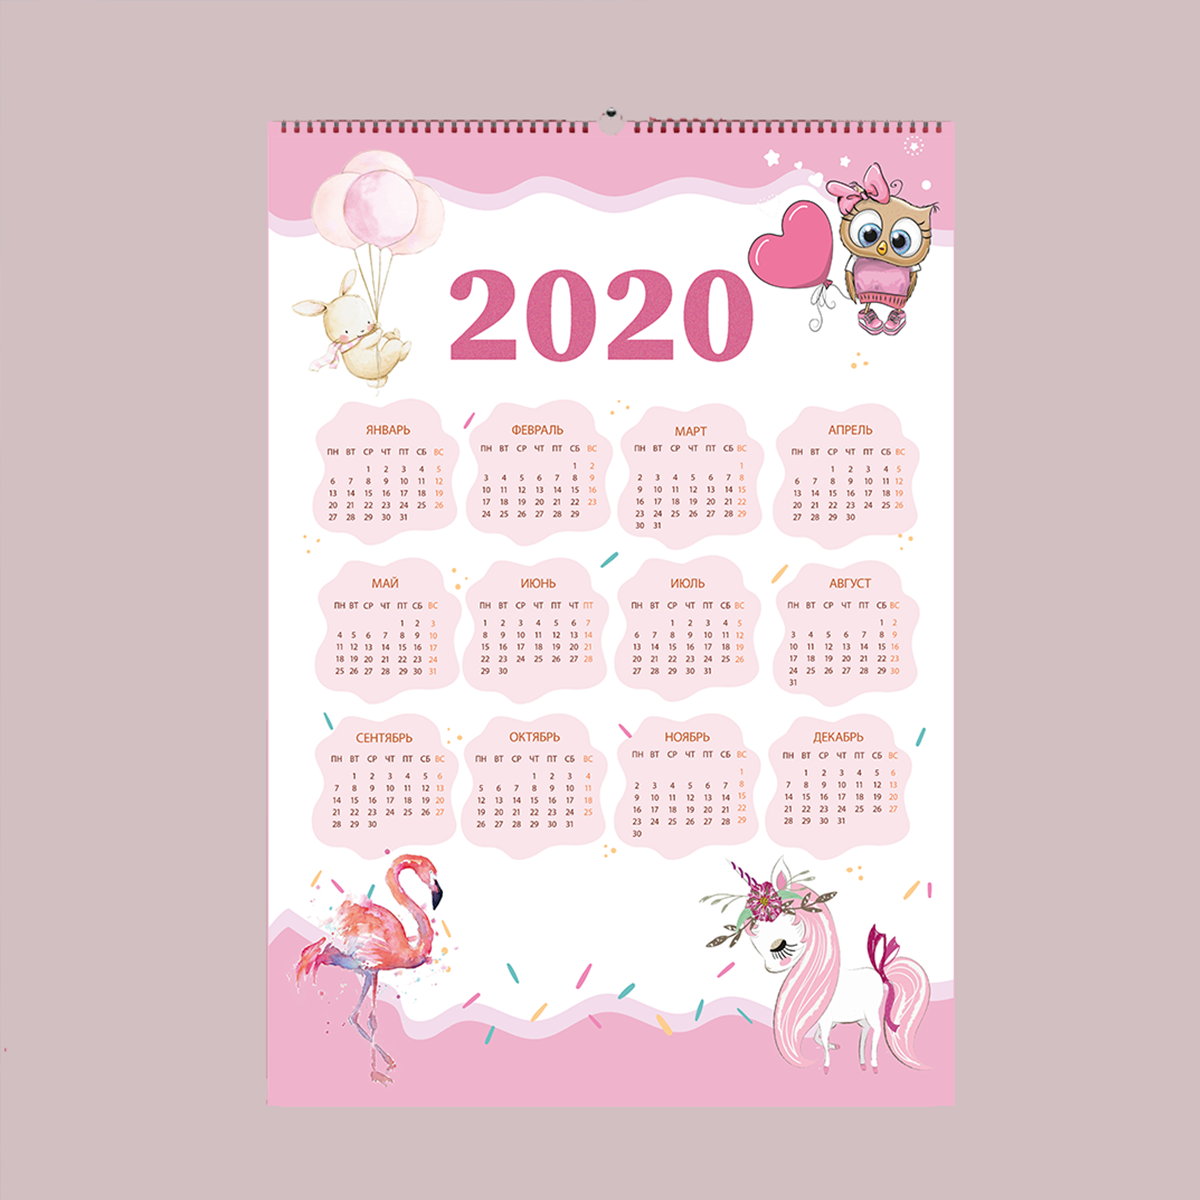 Calendar 2020 for girls